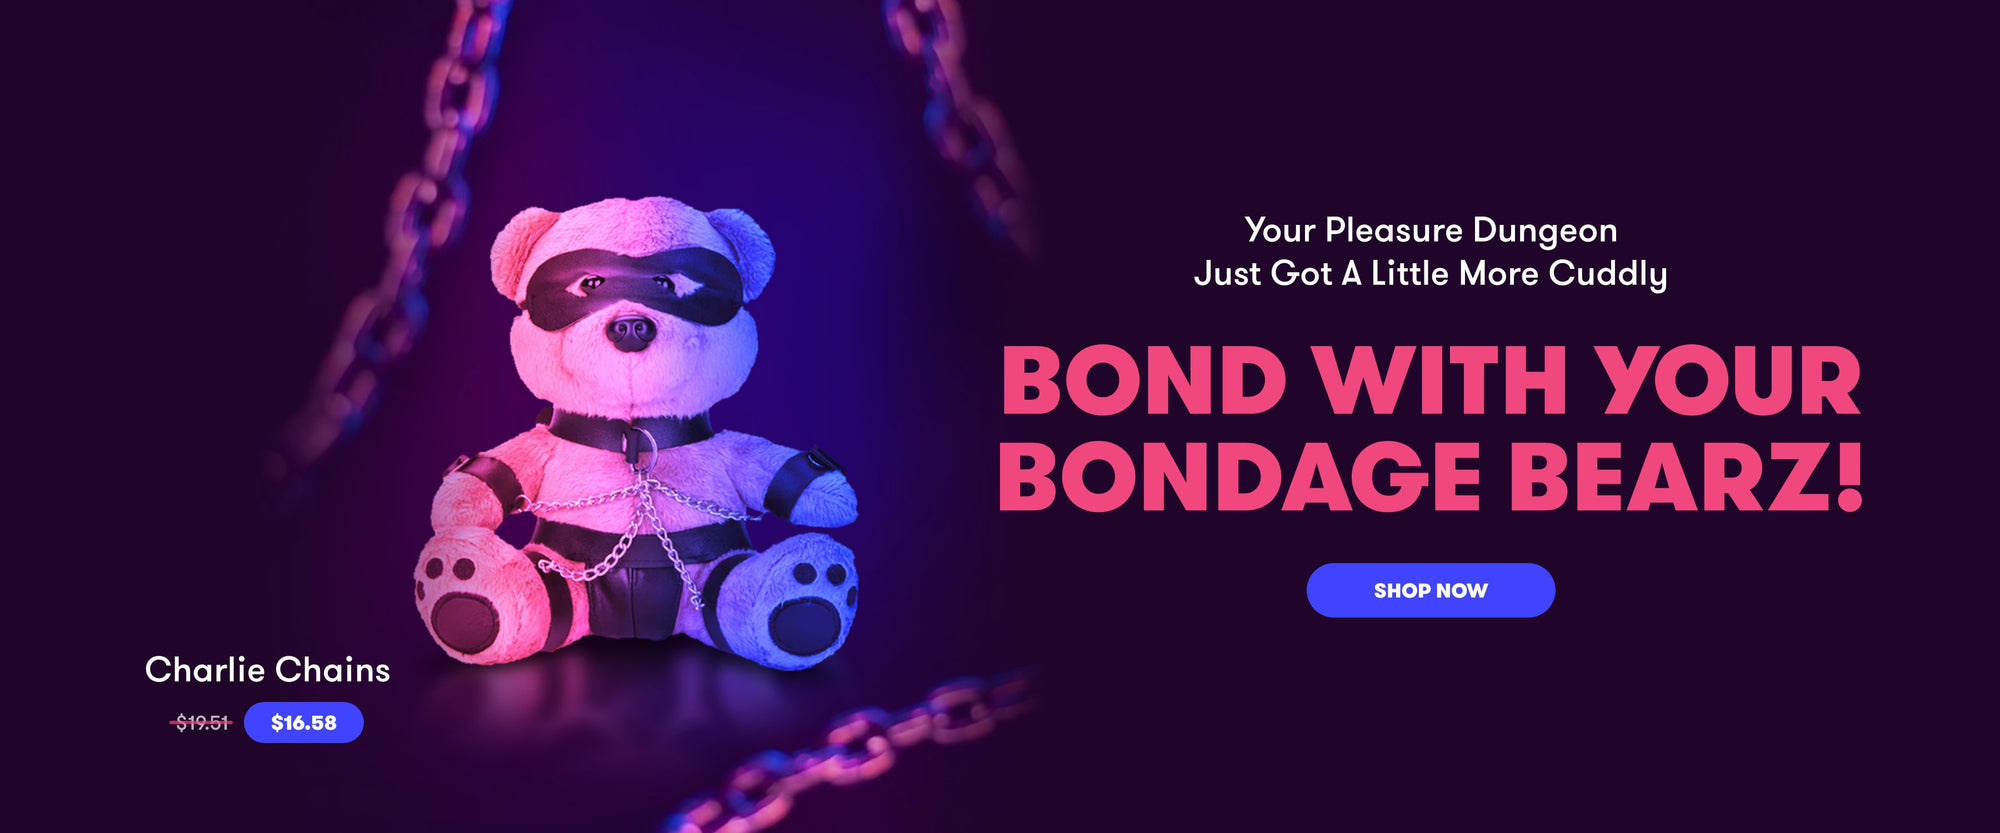 Lux Fetish Bondage Bearz - Charlie Chains Bondage Bearz